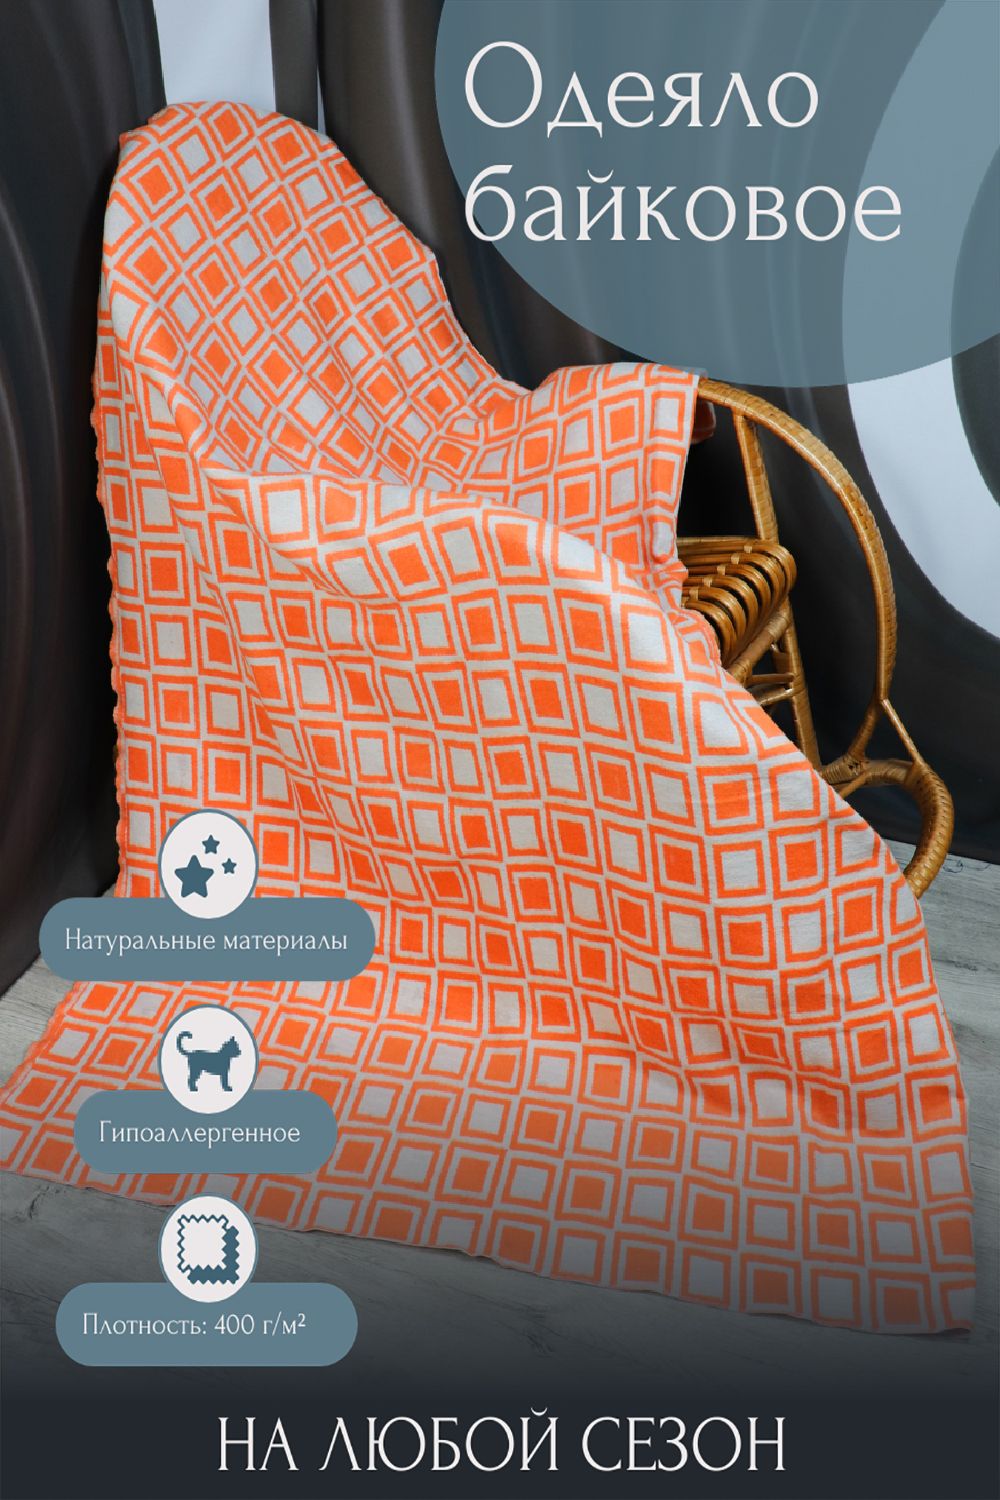 Одеяло байковое Катания - оранжевый